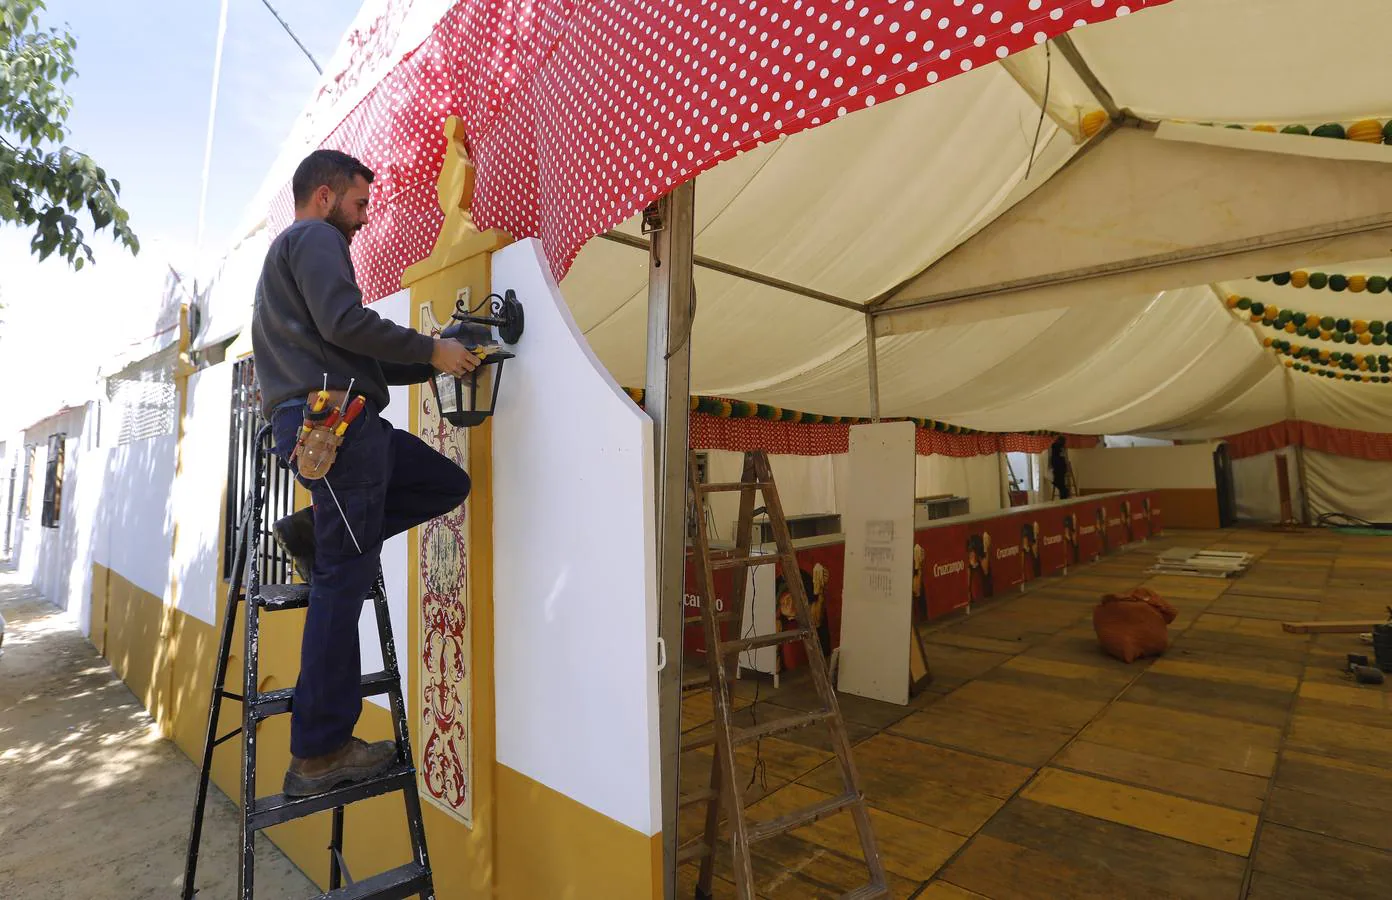 Preparativos de la Feria de Mayo de Córdoba de 2018, en imágenes